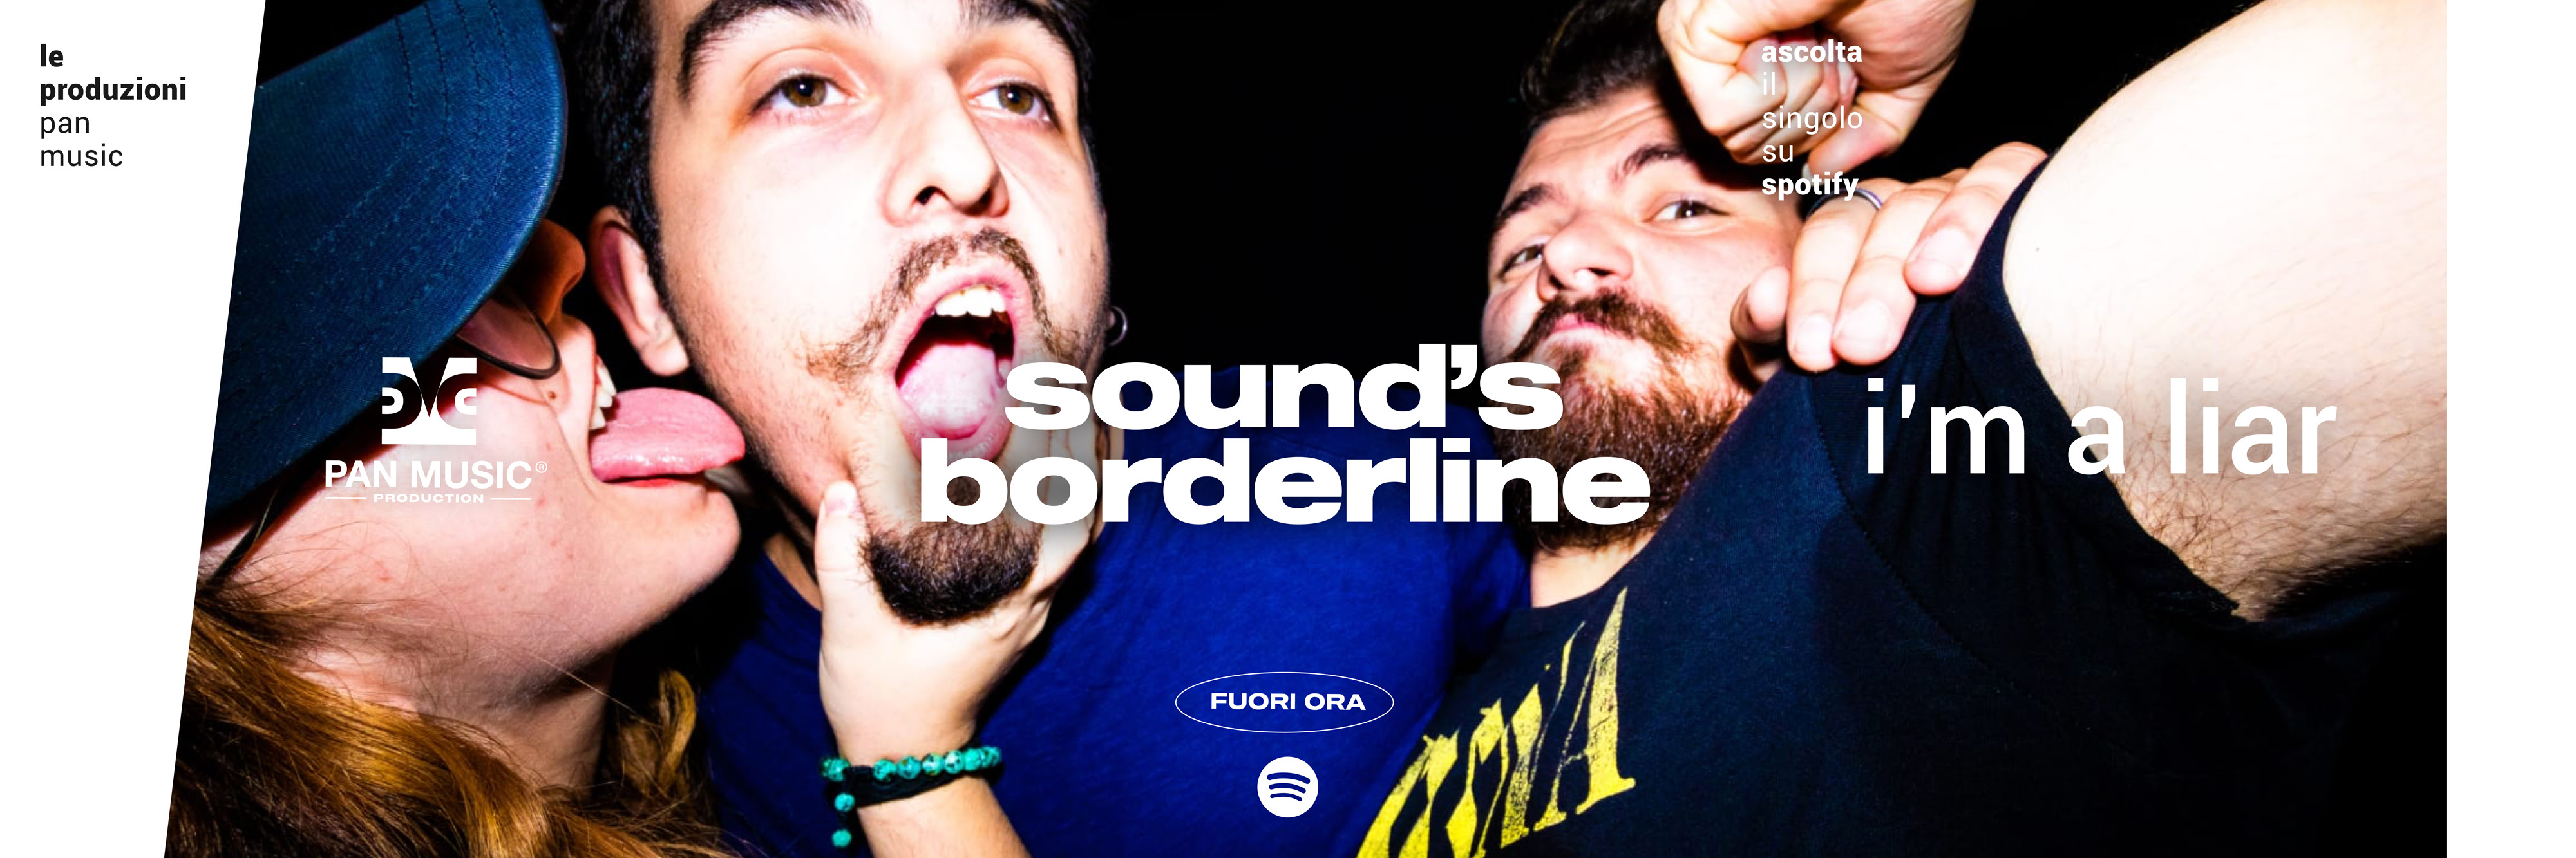 sound's borderline